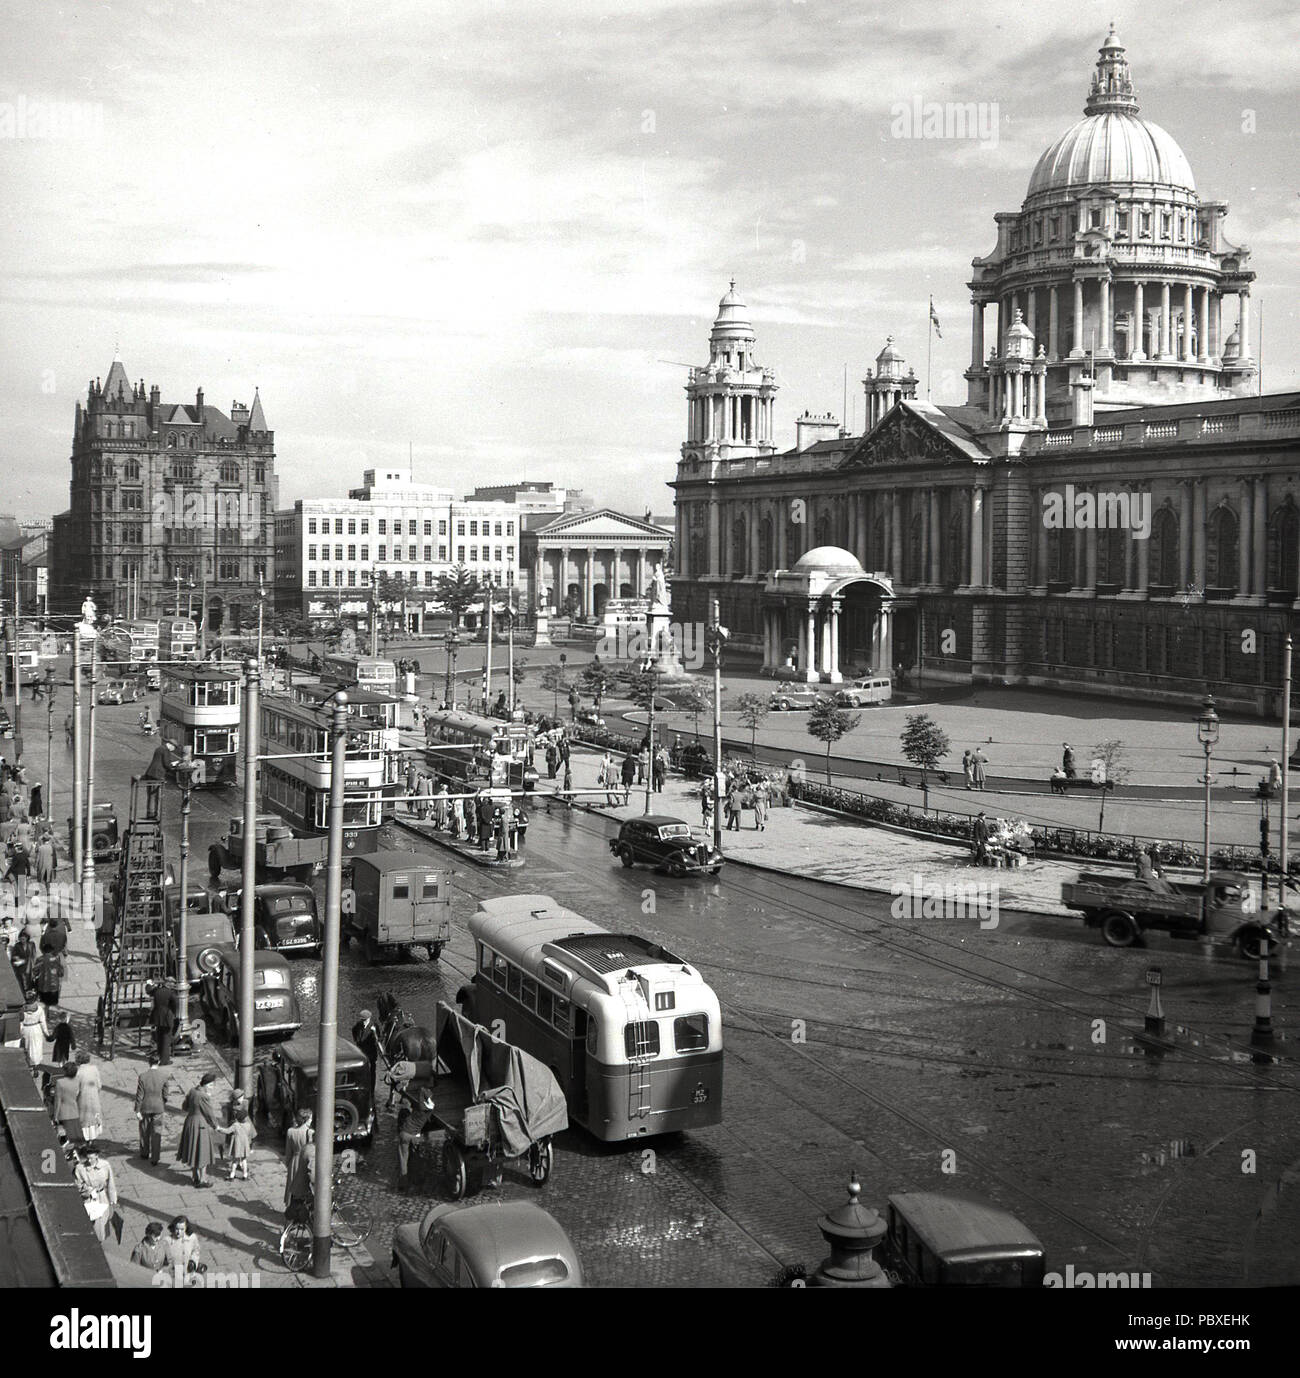 1950, historique, une vue sur la place Donegal à l'hôtel de ville, Belfast, Irlande du Nord, montrant l'activité générale et le transport de la journée y compris les trams. Banque D'Images